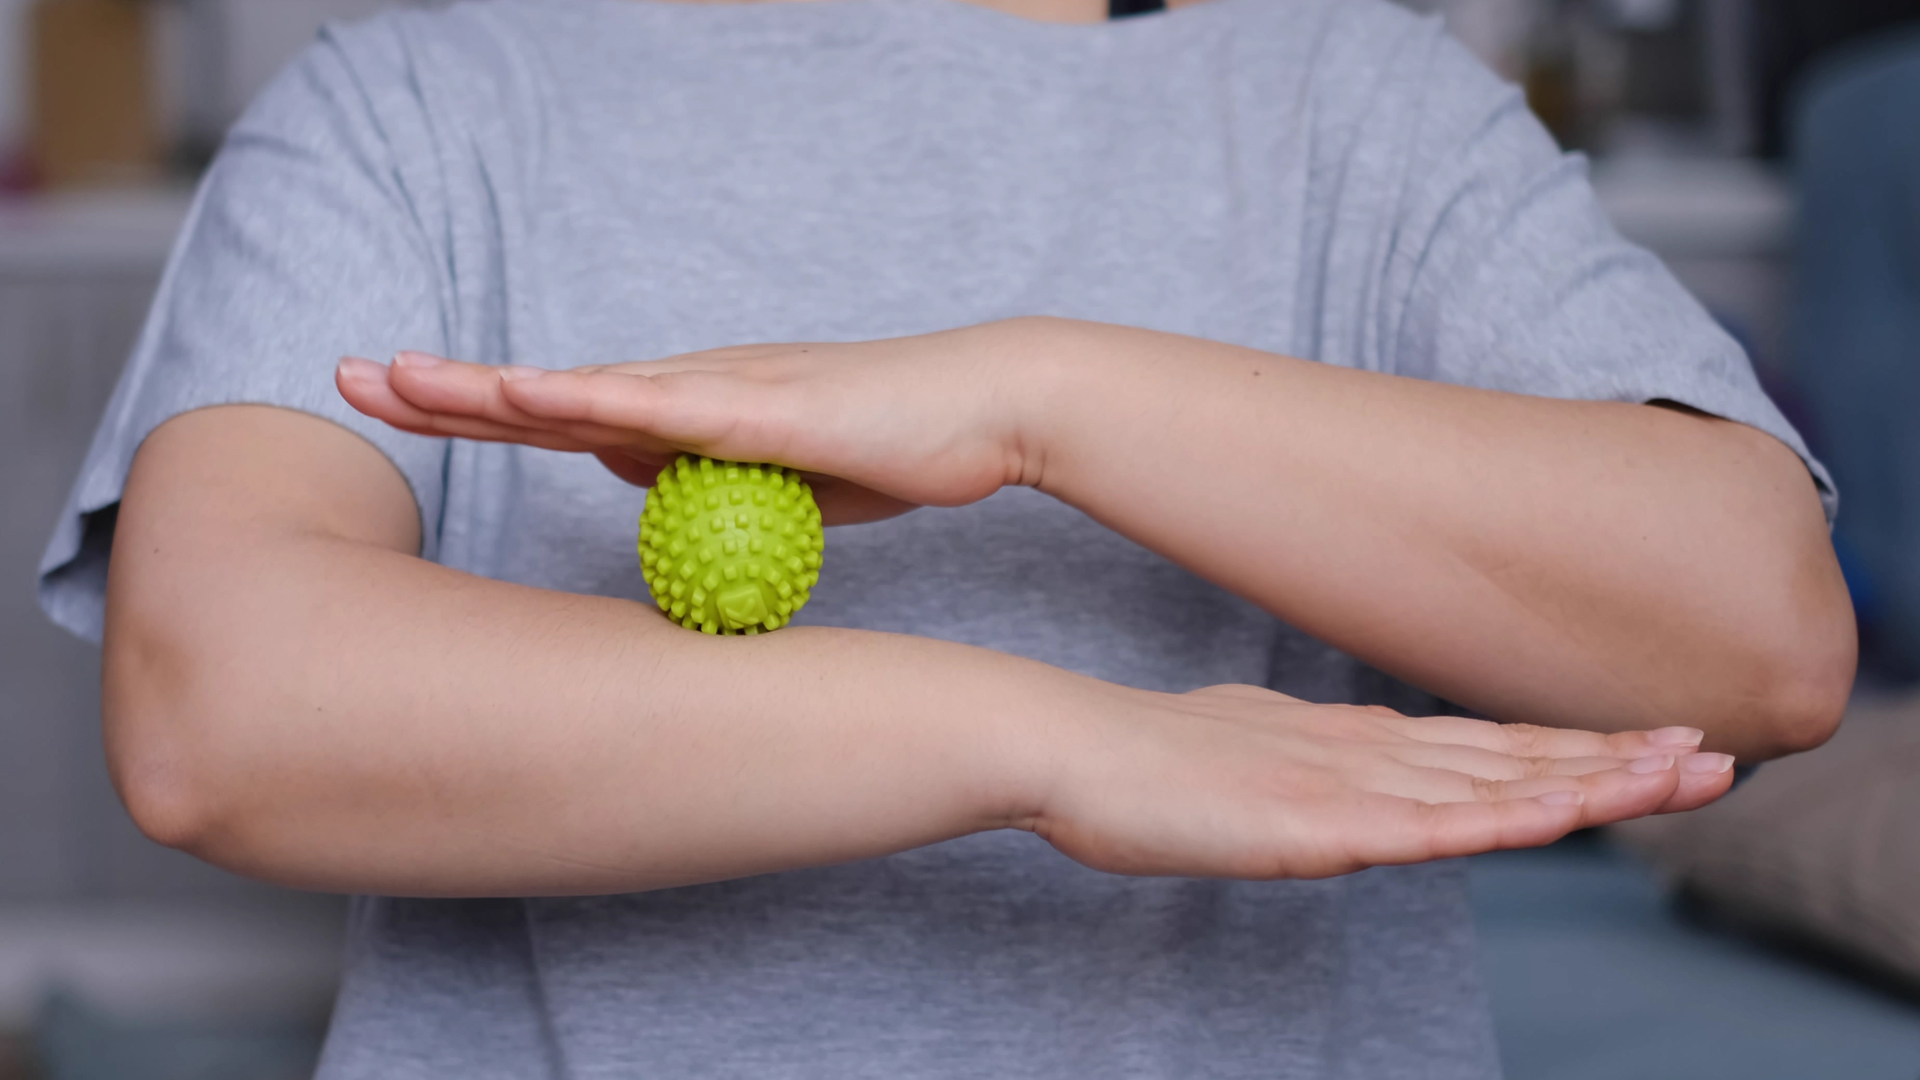 women using a massage ball for a trigger point massage